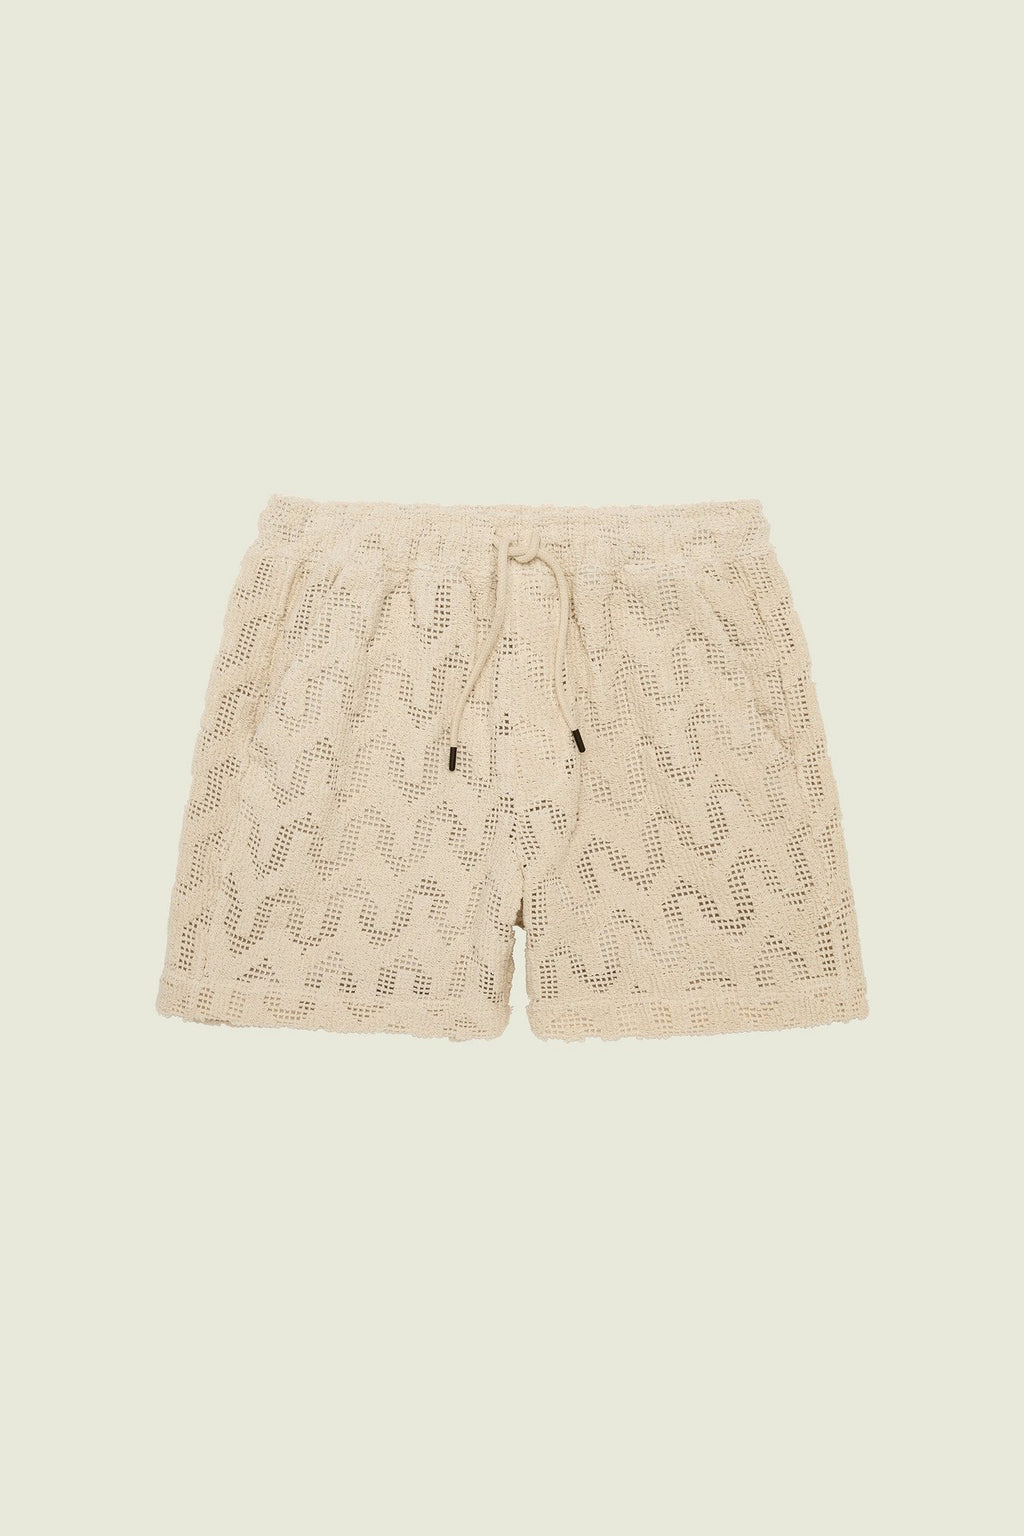 Oas Atlas Crochet Shorts